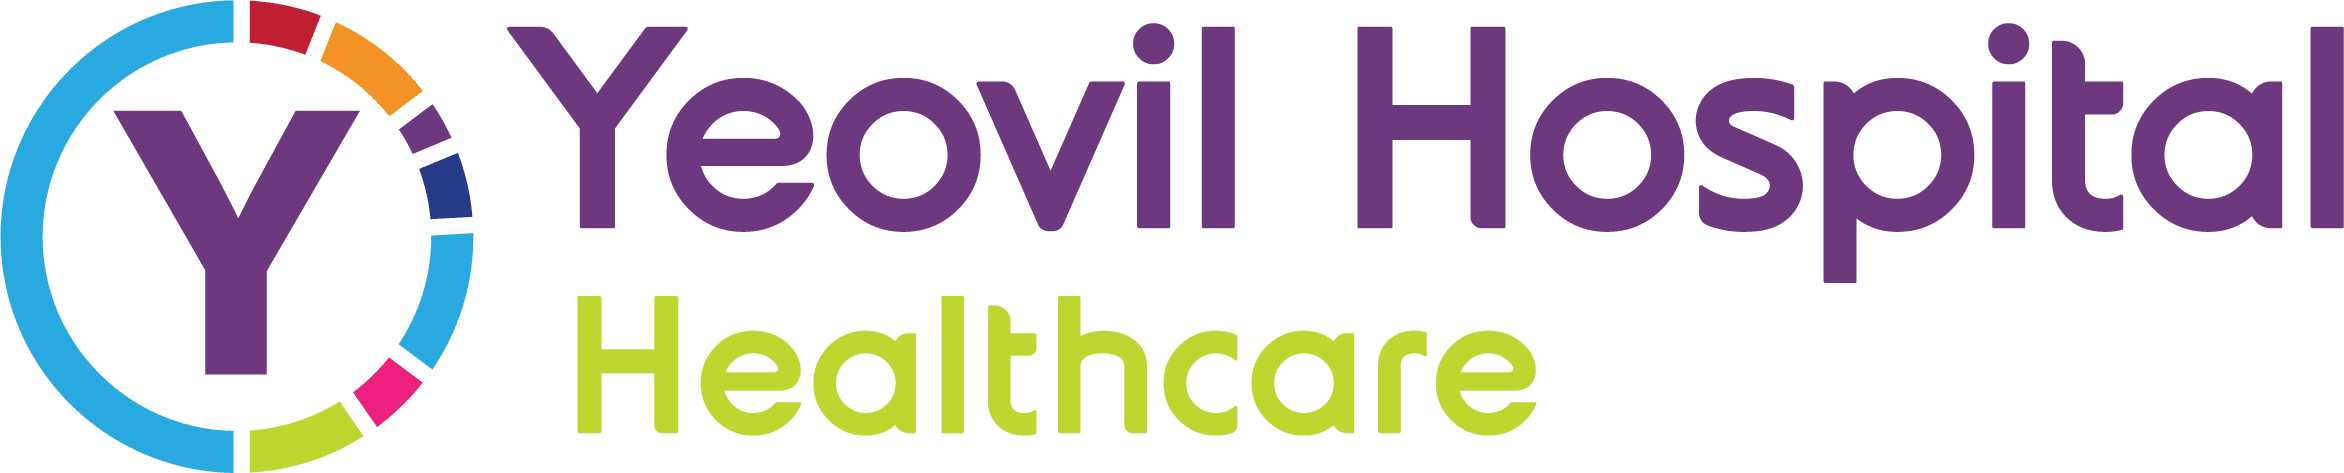 Yeovil hospital logo